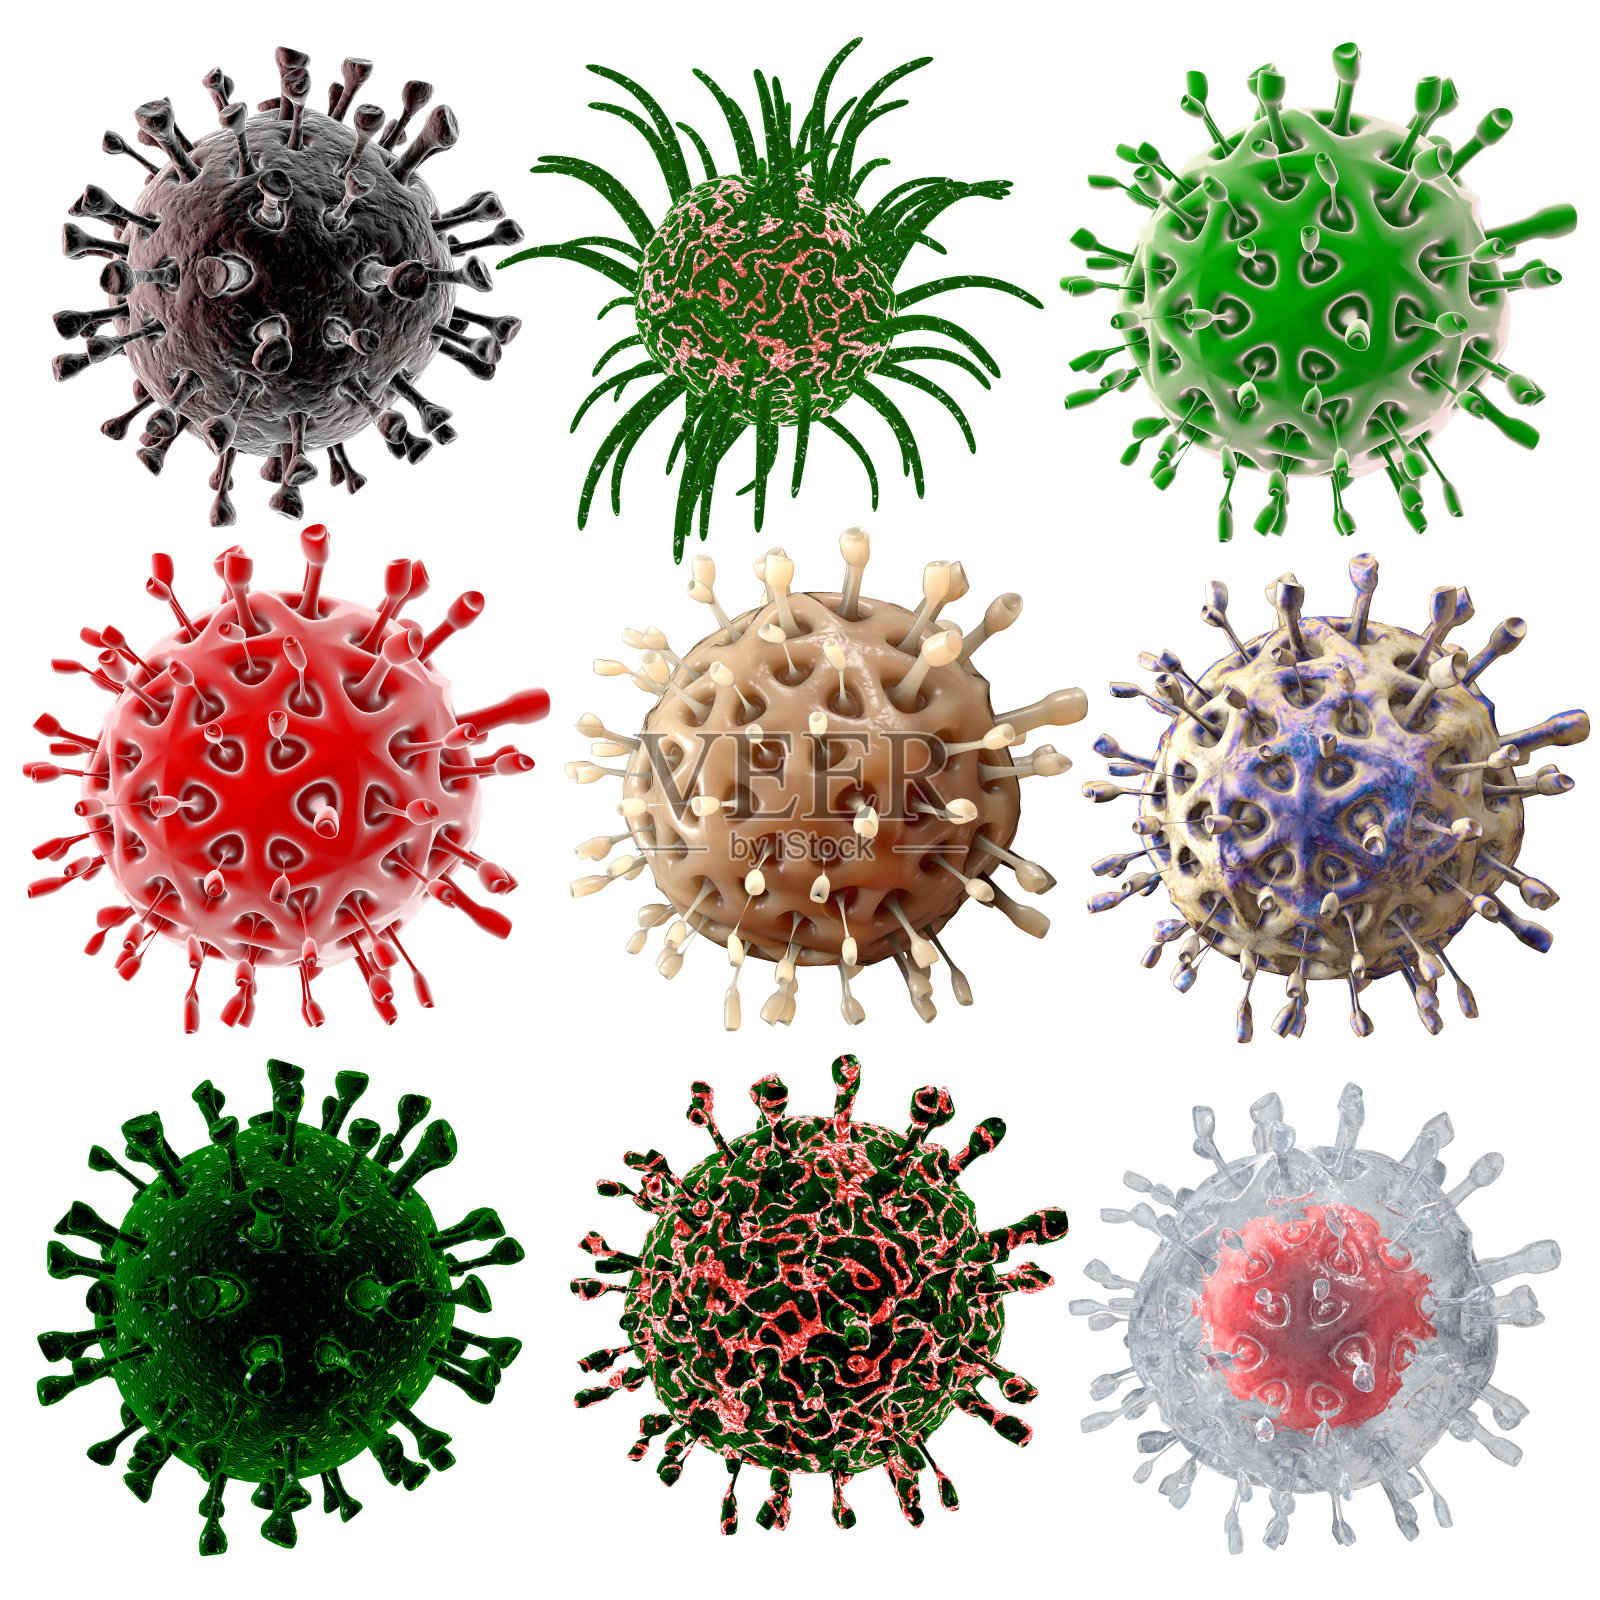 病毒。细菌。生物体内微生物，病毒性疾病流行。分离出白色照片摄影图片